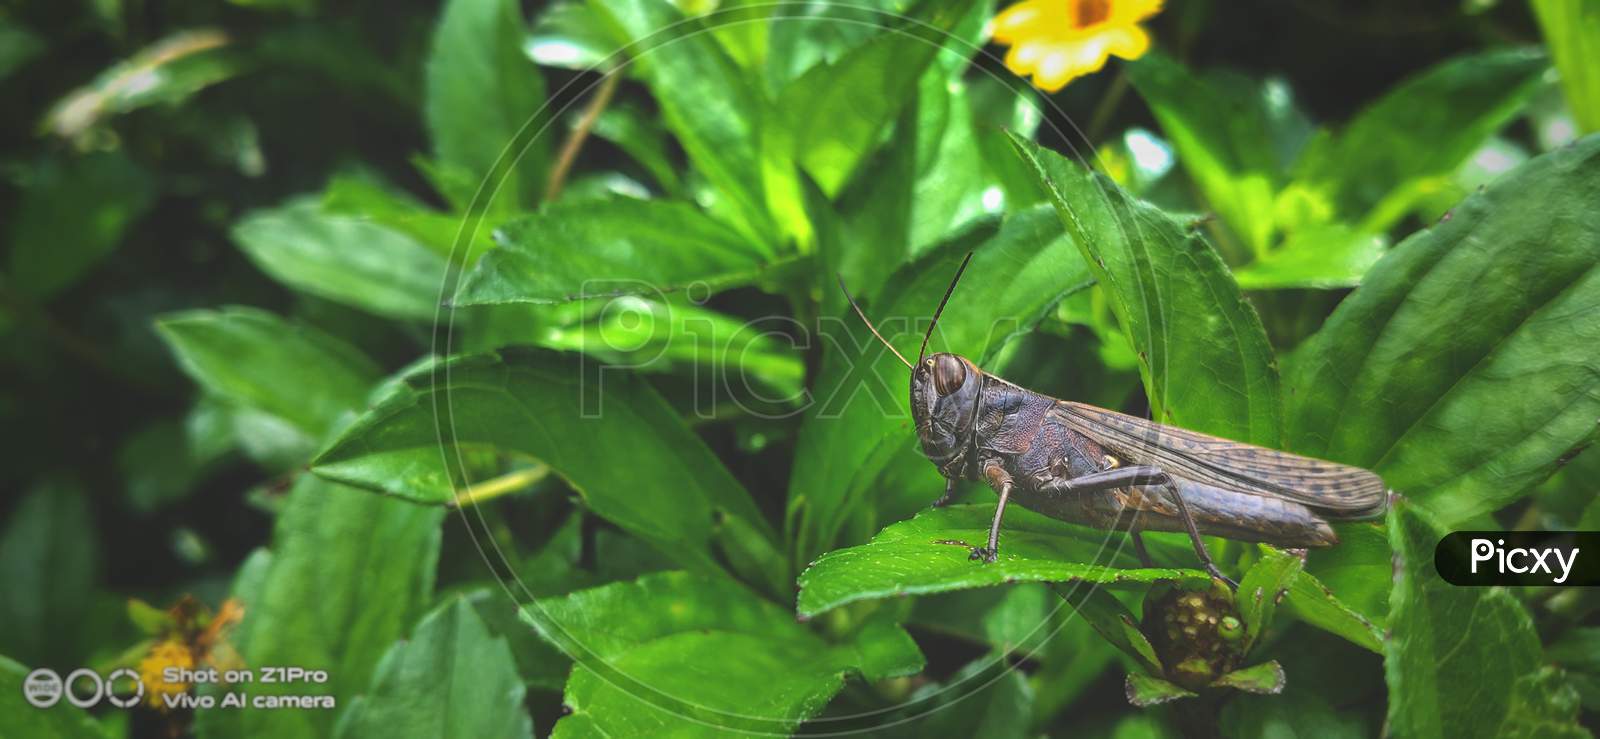 Migratory Locust, Locust, Locusta Migratoria. Grasshopper (Locust) Eating Green Plants Isolated On Nature Background. Locust Attack In India.